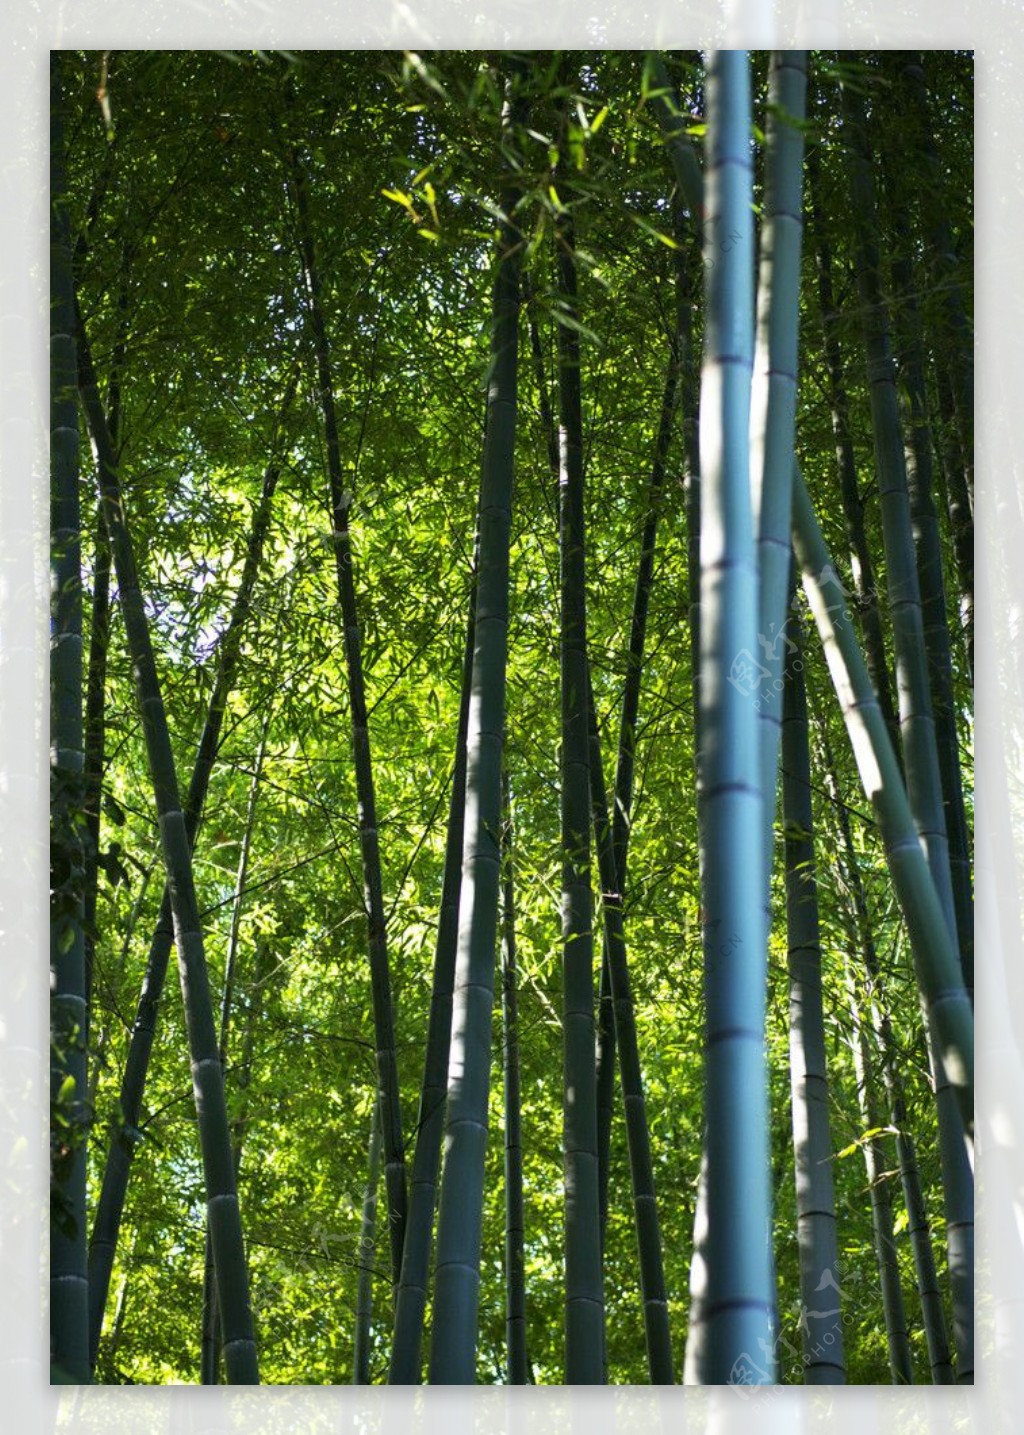 绿色竹林竹子专题图片